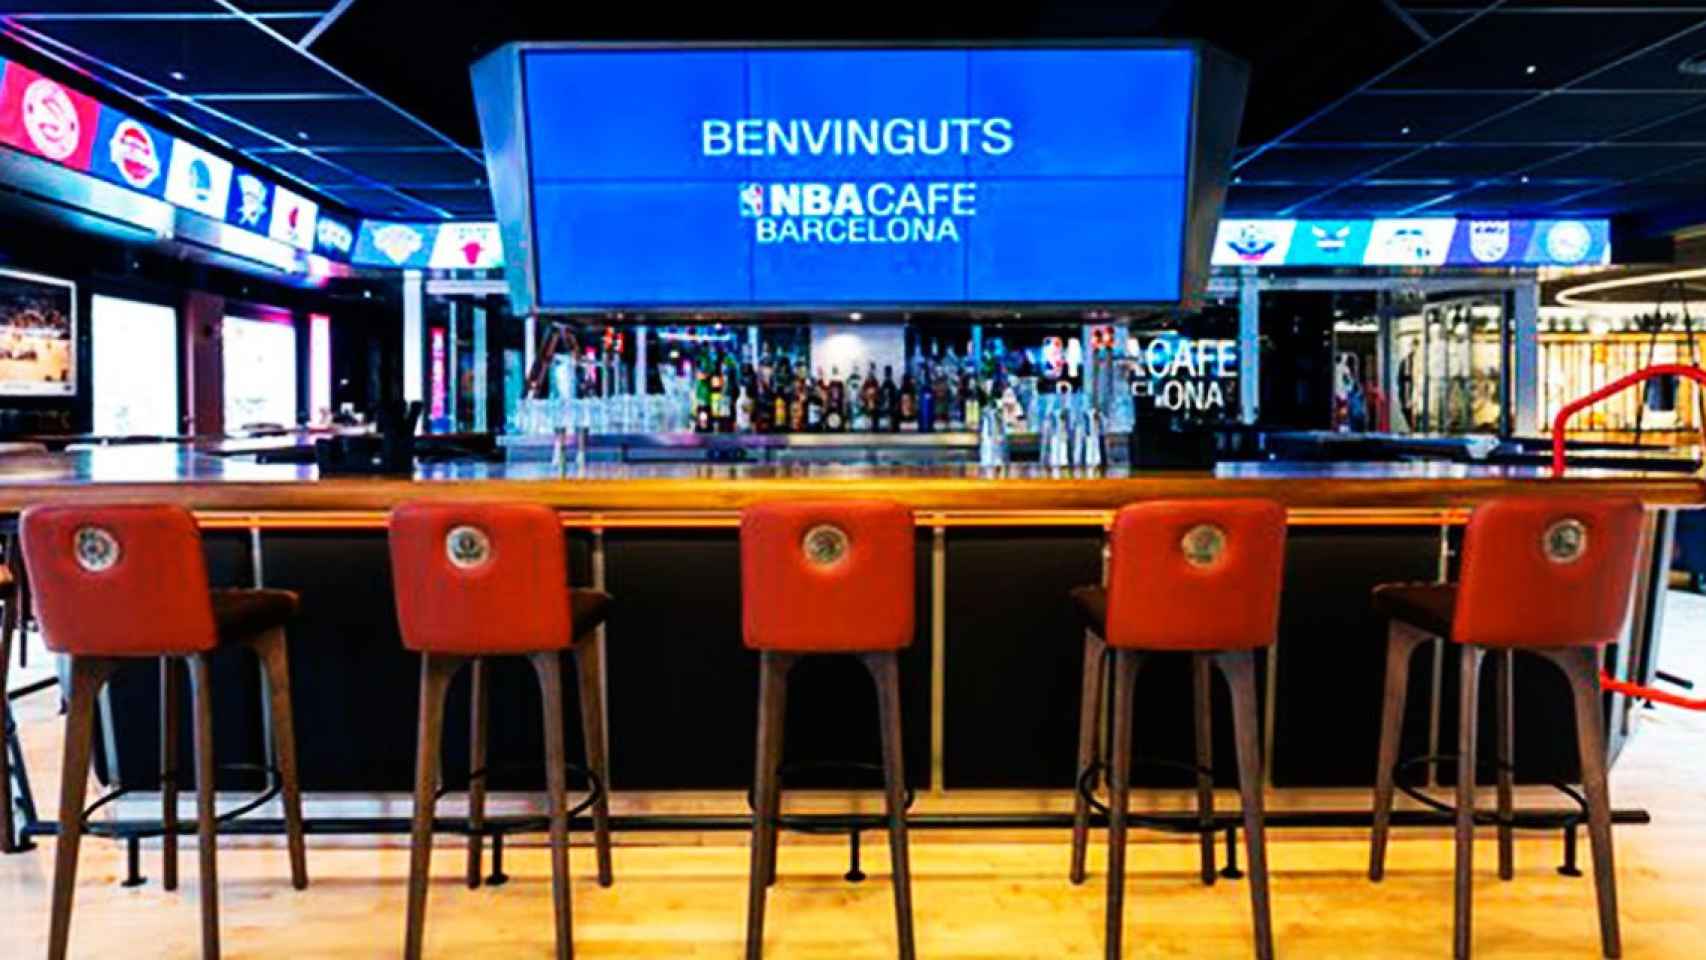 El NBA Café de Barcelona, cerrado tras el coronavirus / NBA Café